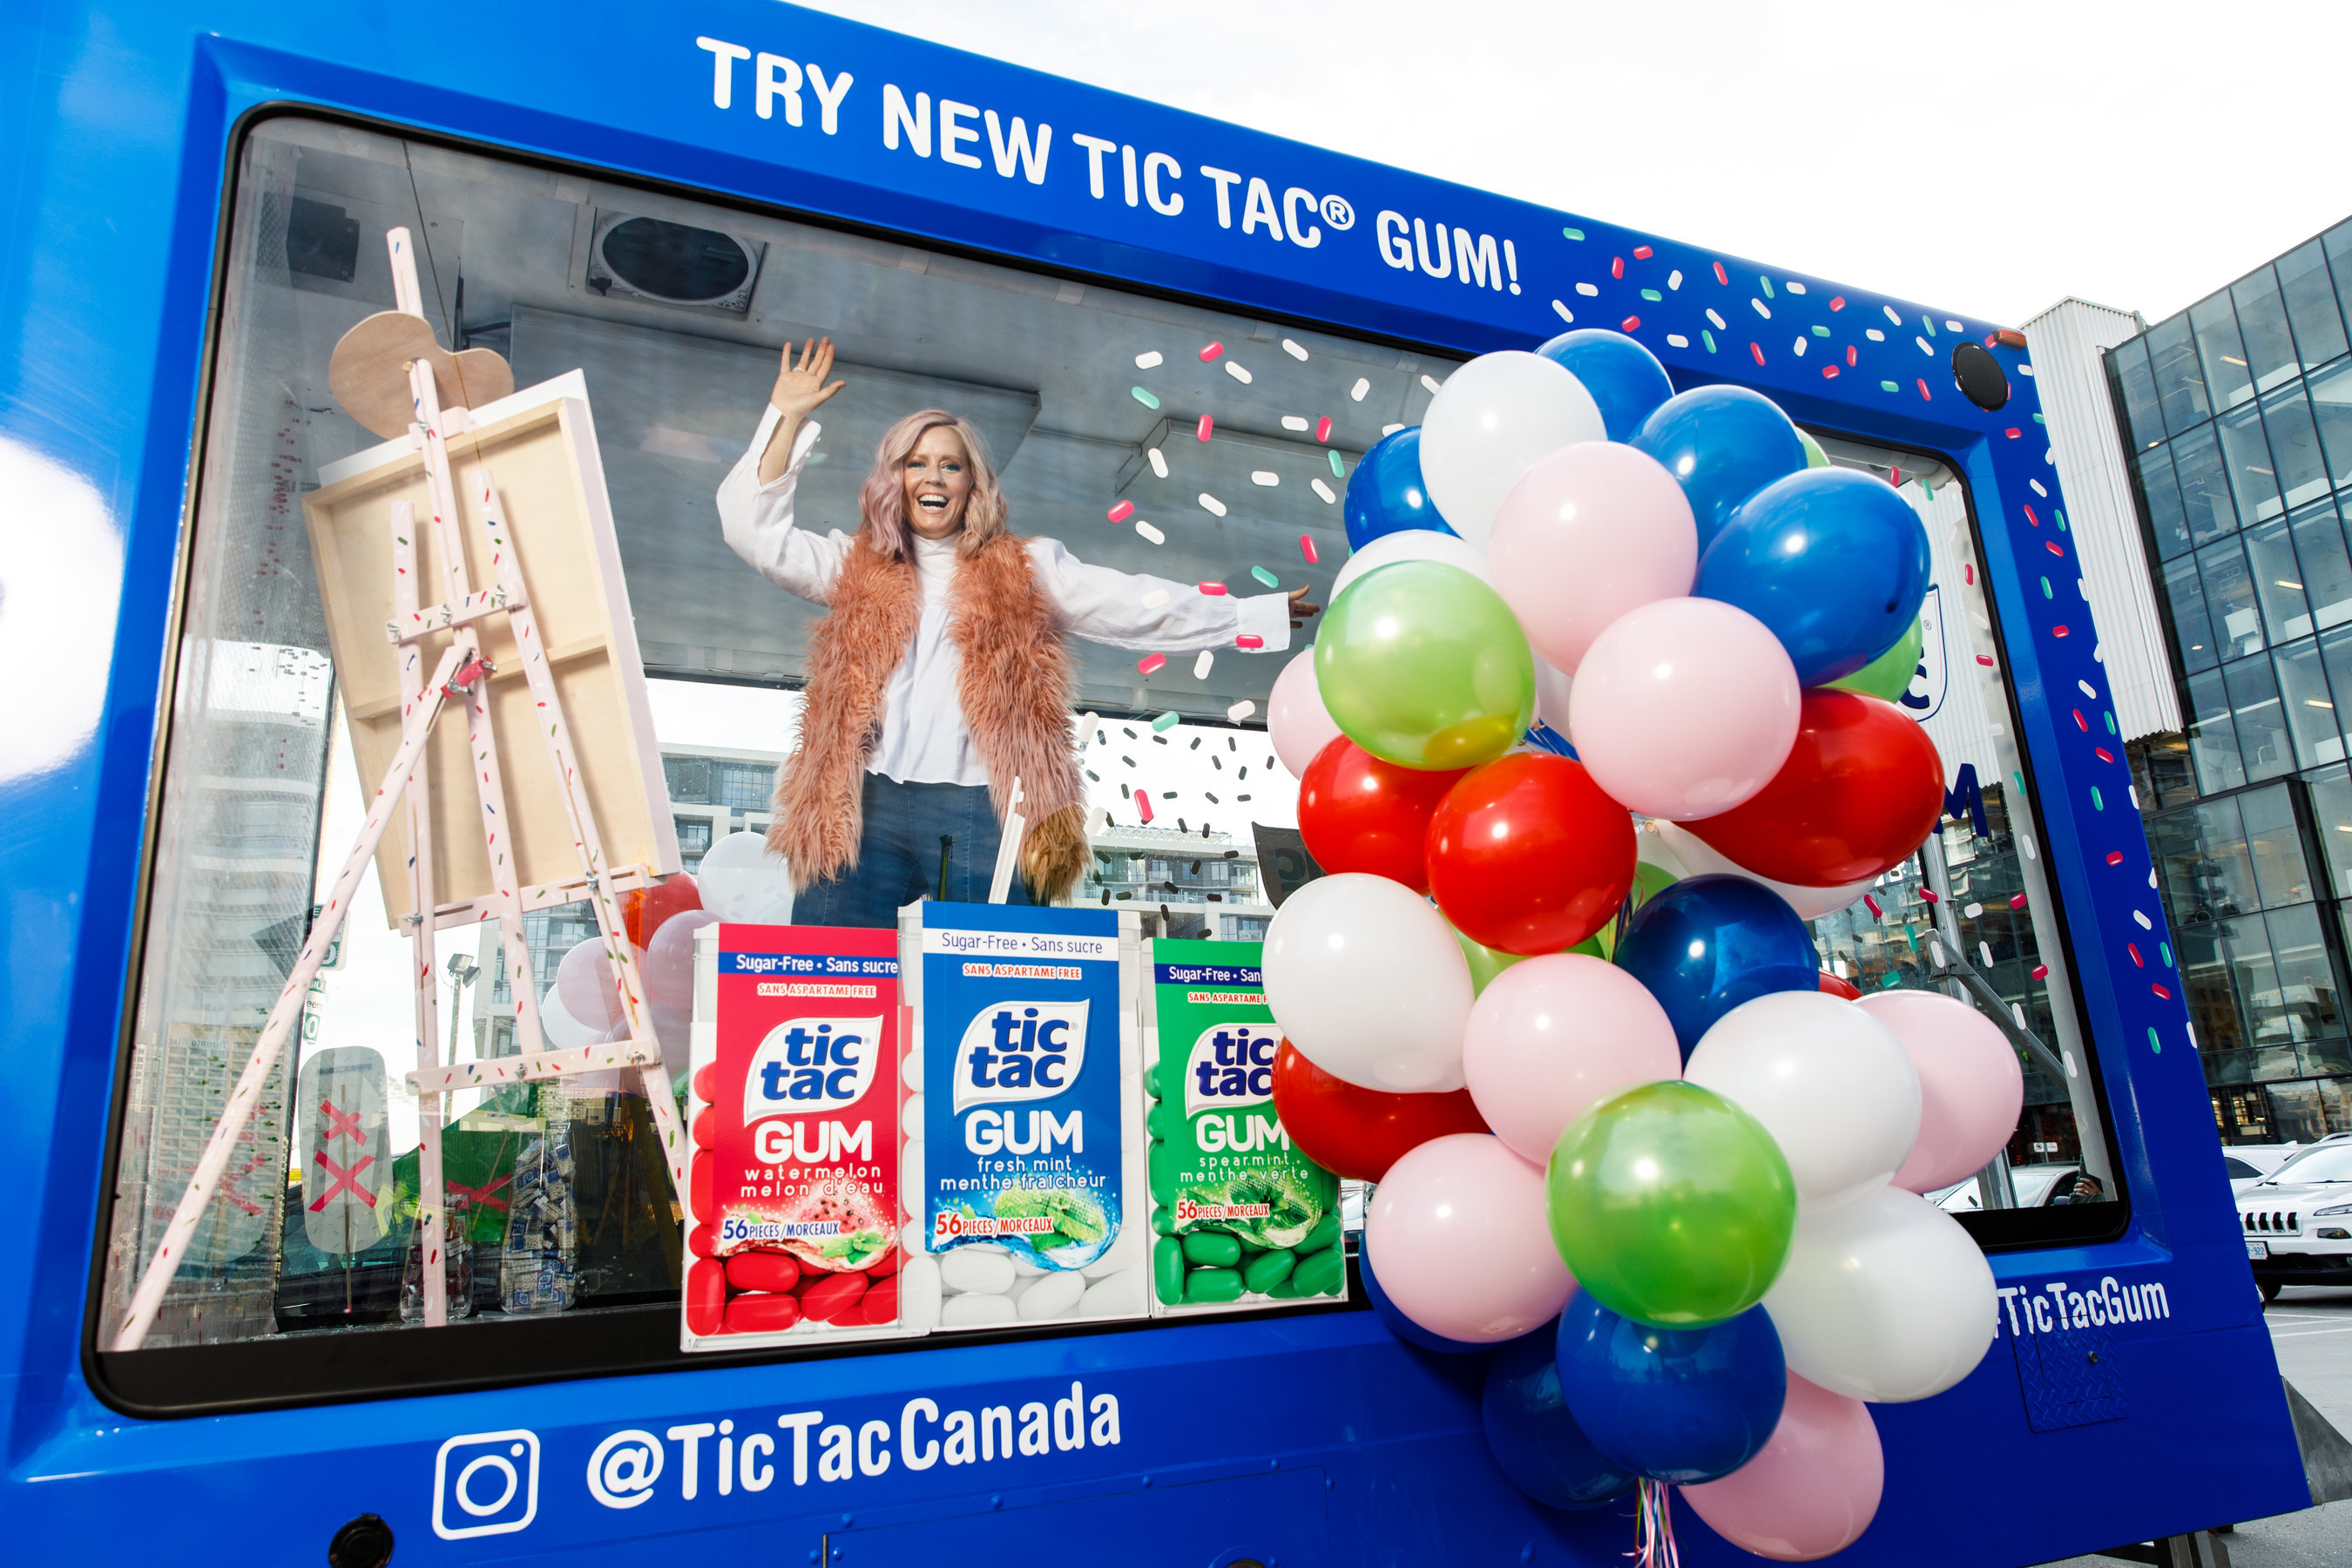 Tic_Tac_Canada_La_gomme___m_cher_Tic_Tac_MD__GUM_arrive_au_Canad.jpg?p=publish